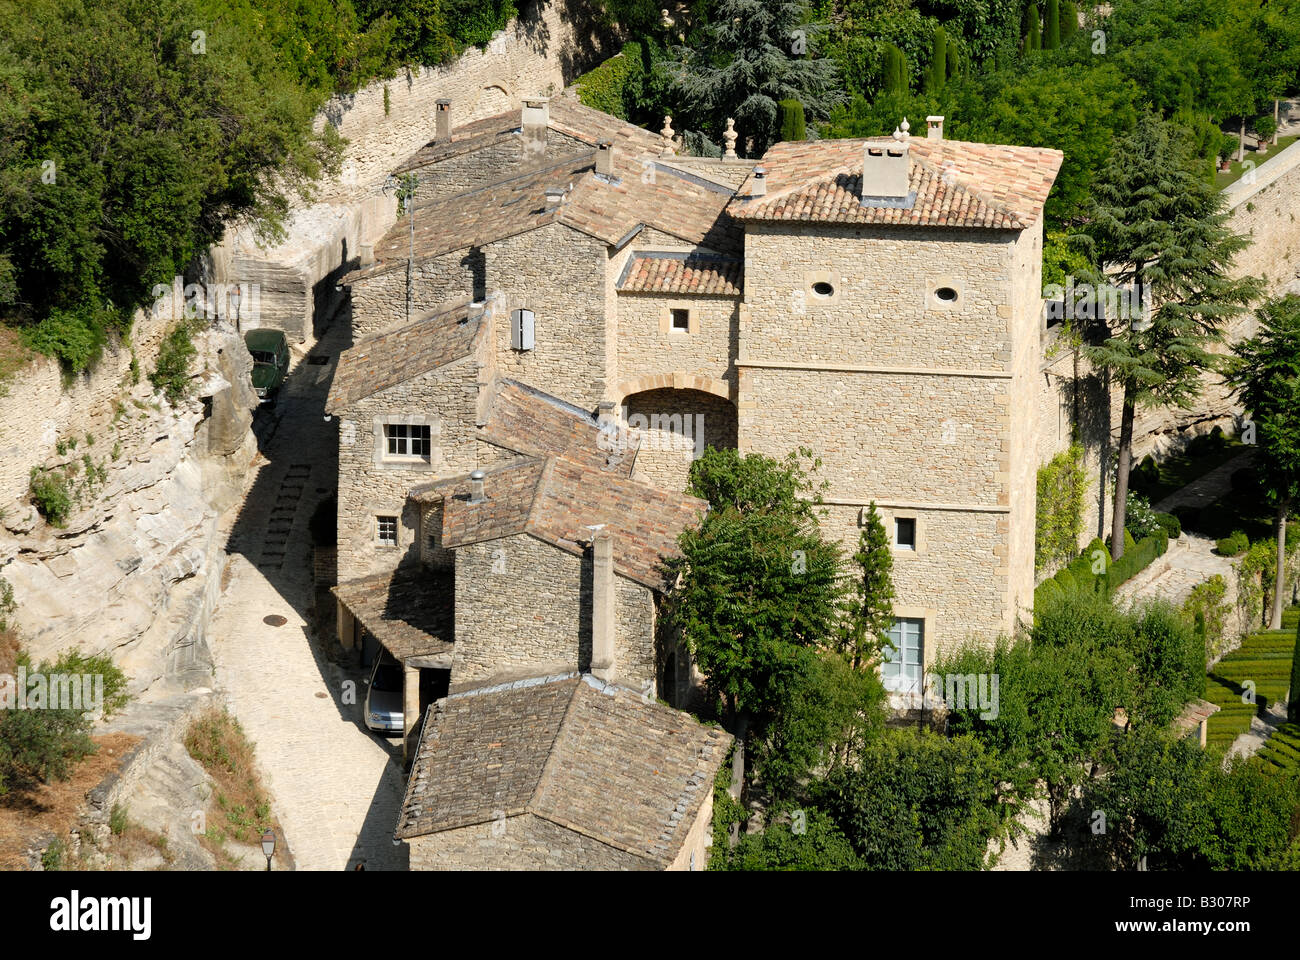 Vue aérienne de maisons médiévales à Gordes, France Banque D'Images